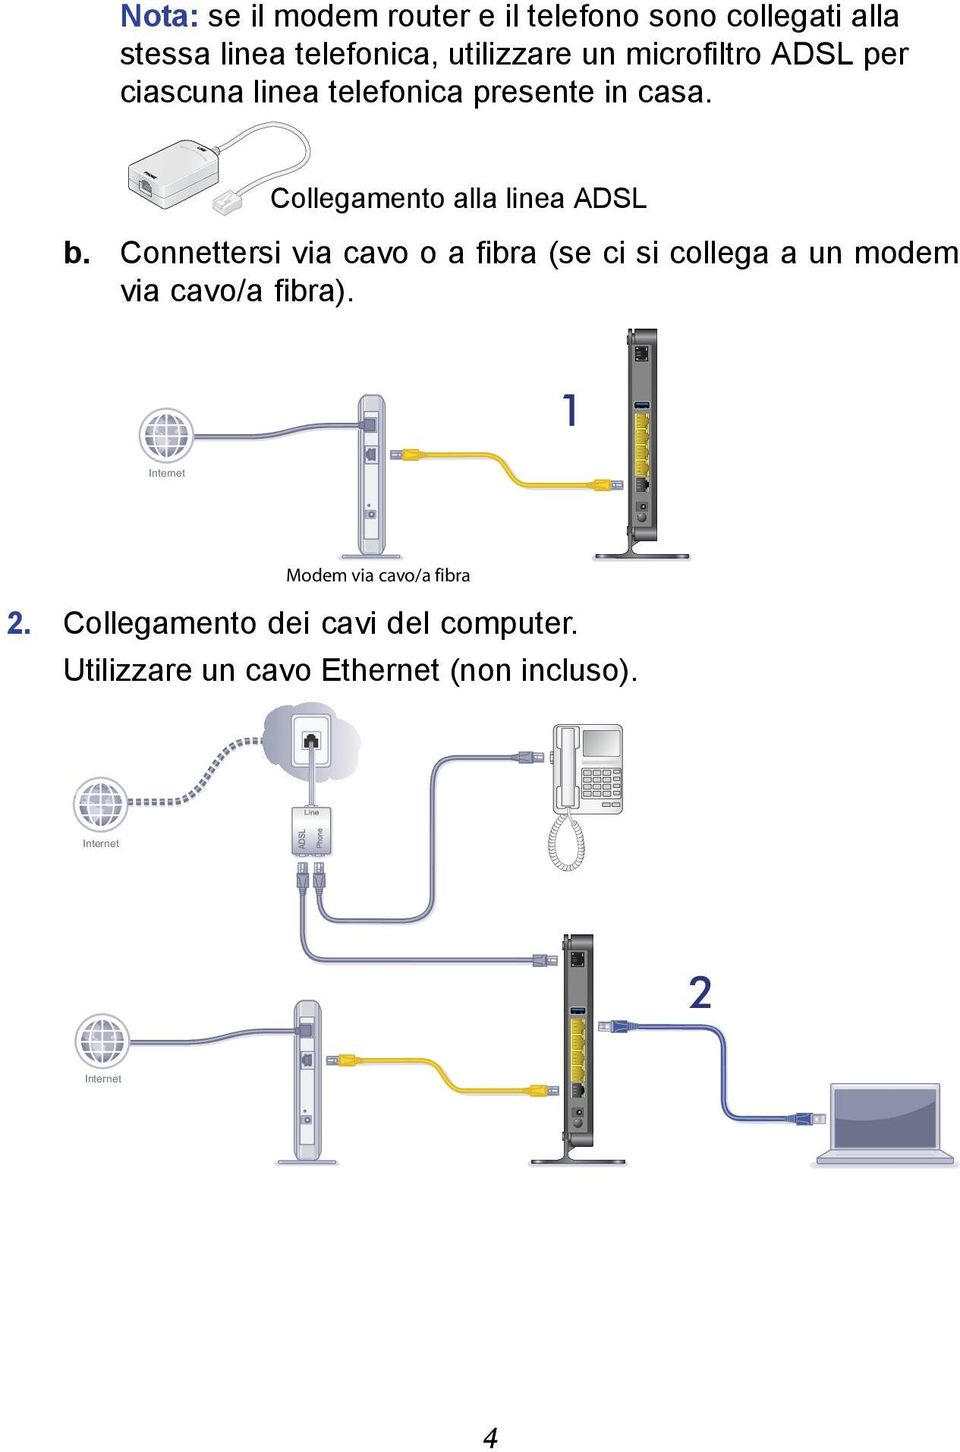 Connettersi via cavo o a fibra (se ci si collega a un modem via cavo/a fibra).